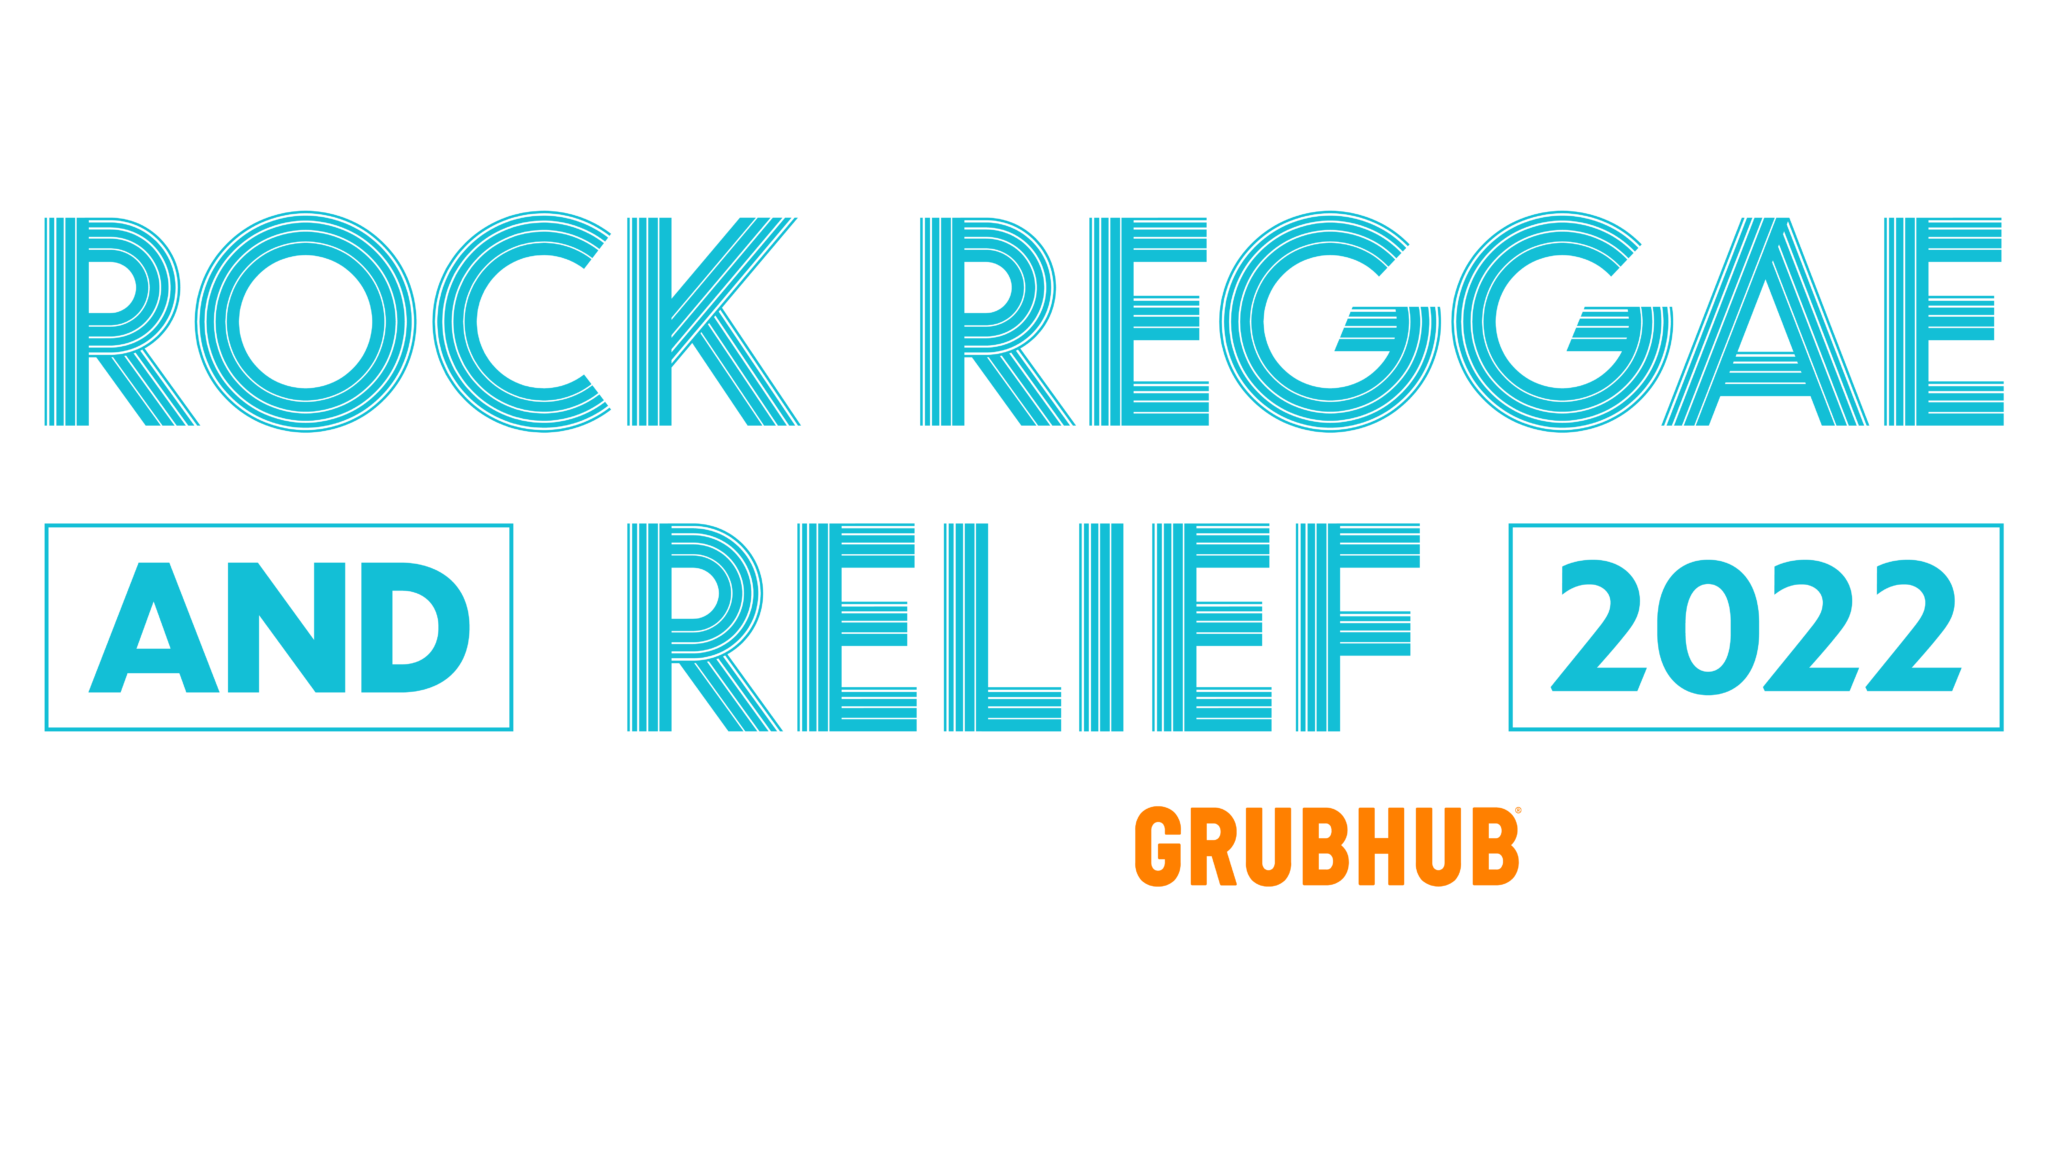 Rock Reggae Relief August 20, 2022